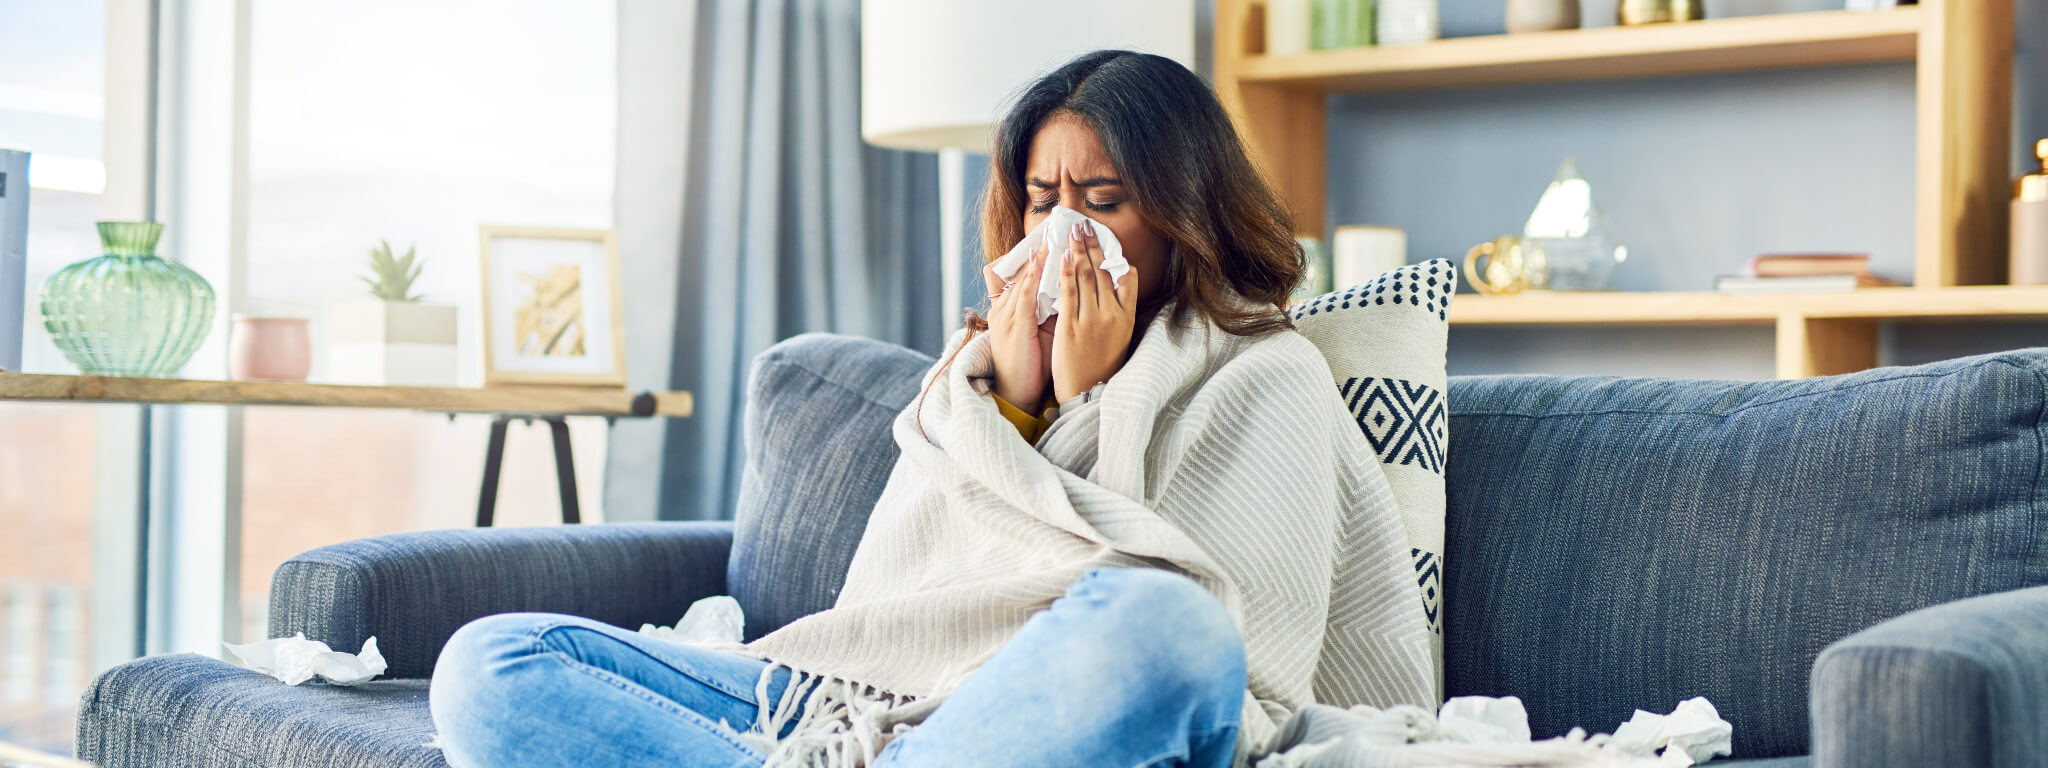 Rinite alérgica: sintomas e tratamento